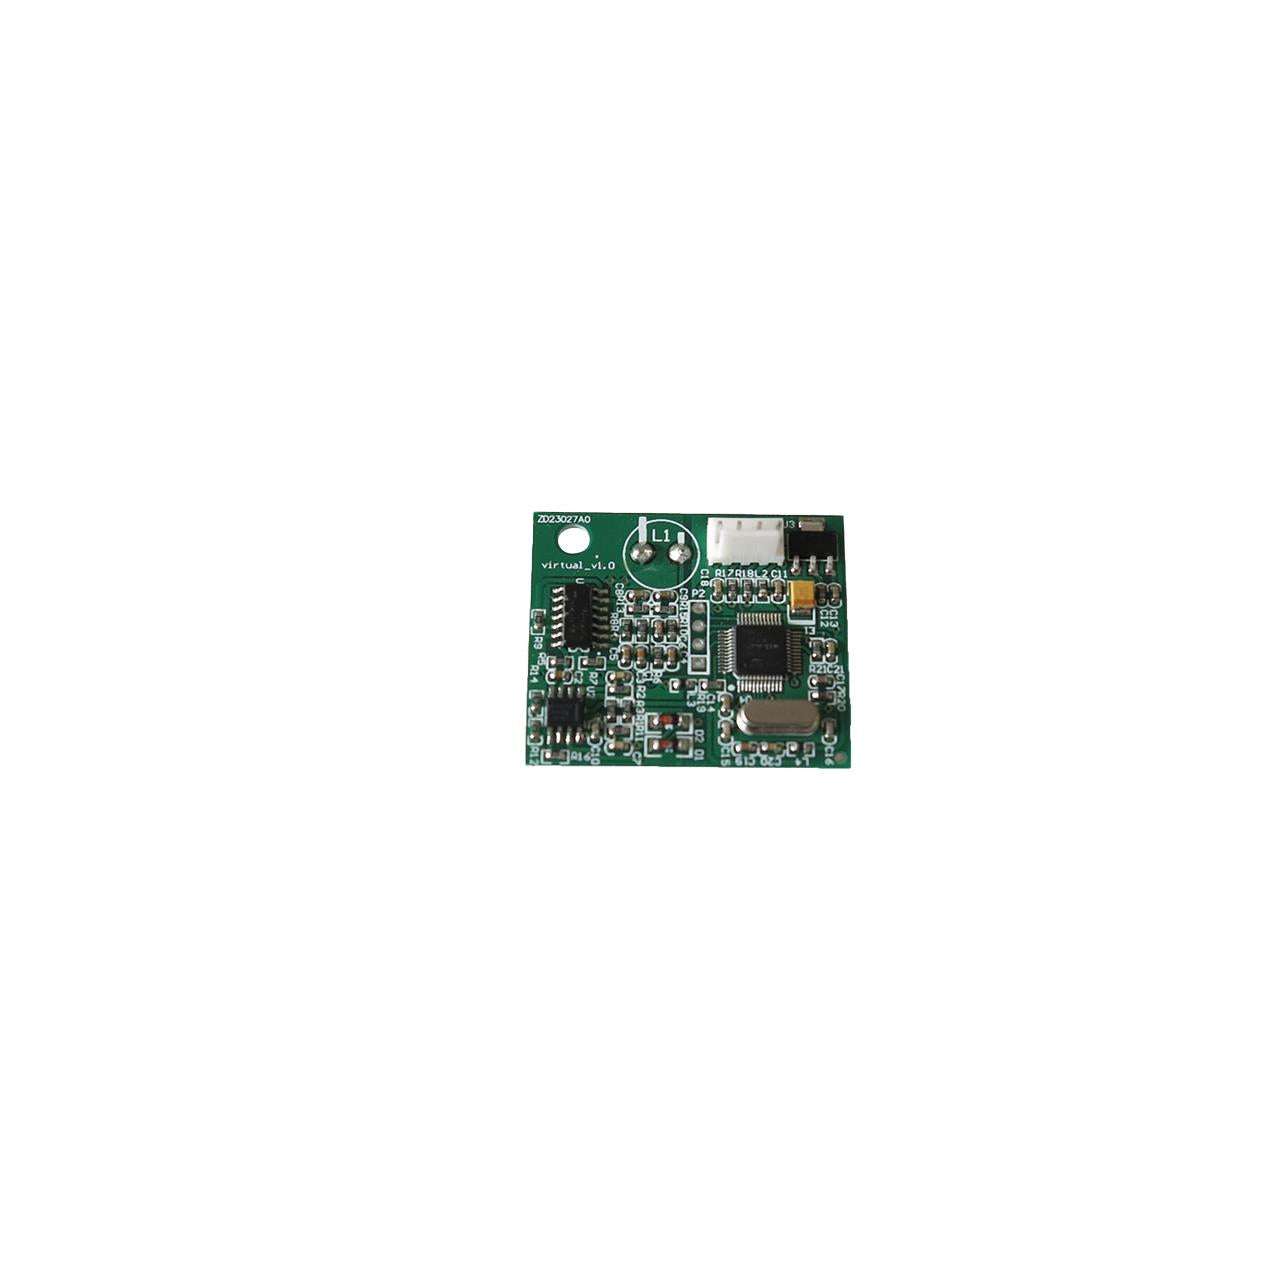 FUXTEC - Platine de commande gestion du cable périphérique robot tondeuse RB022 / RB122 / RB144